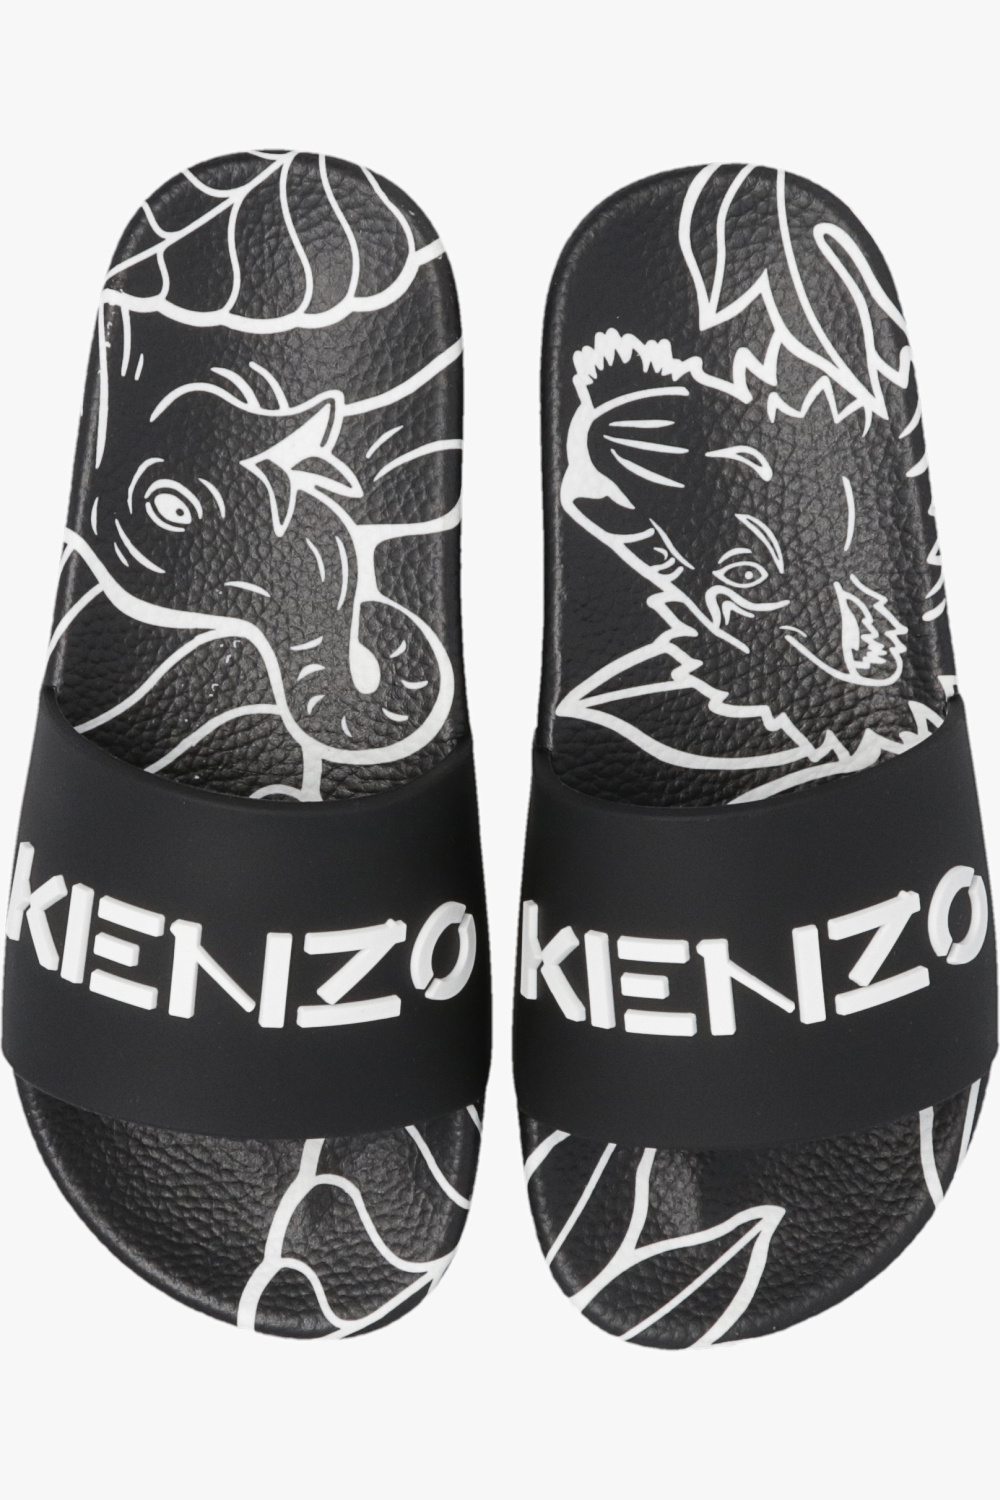 Kenzo Kids Sneakers Air Max 1 PRM